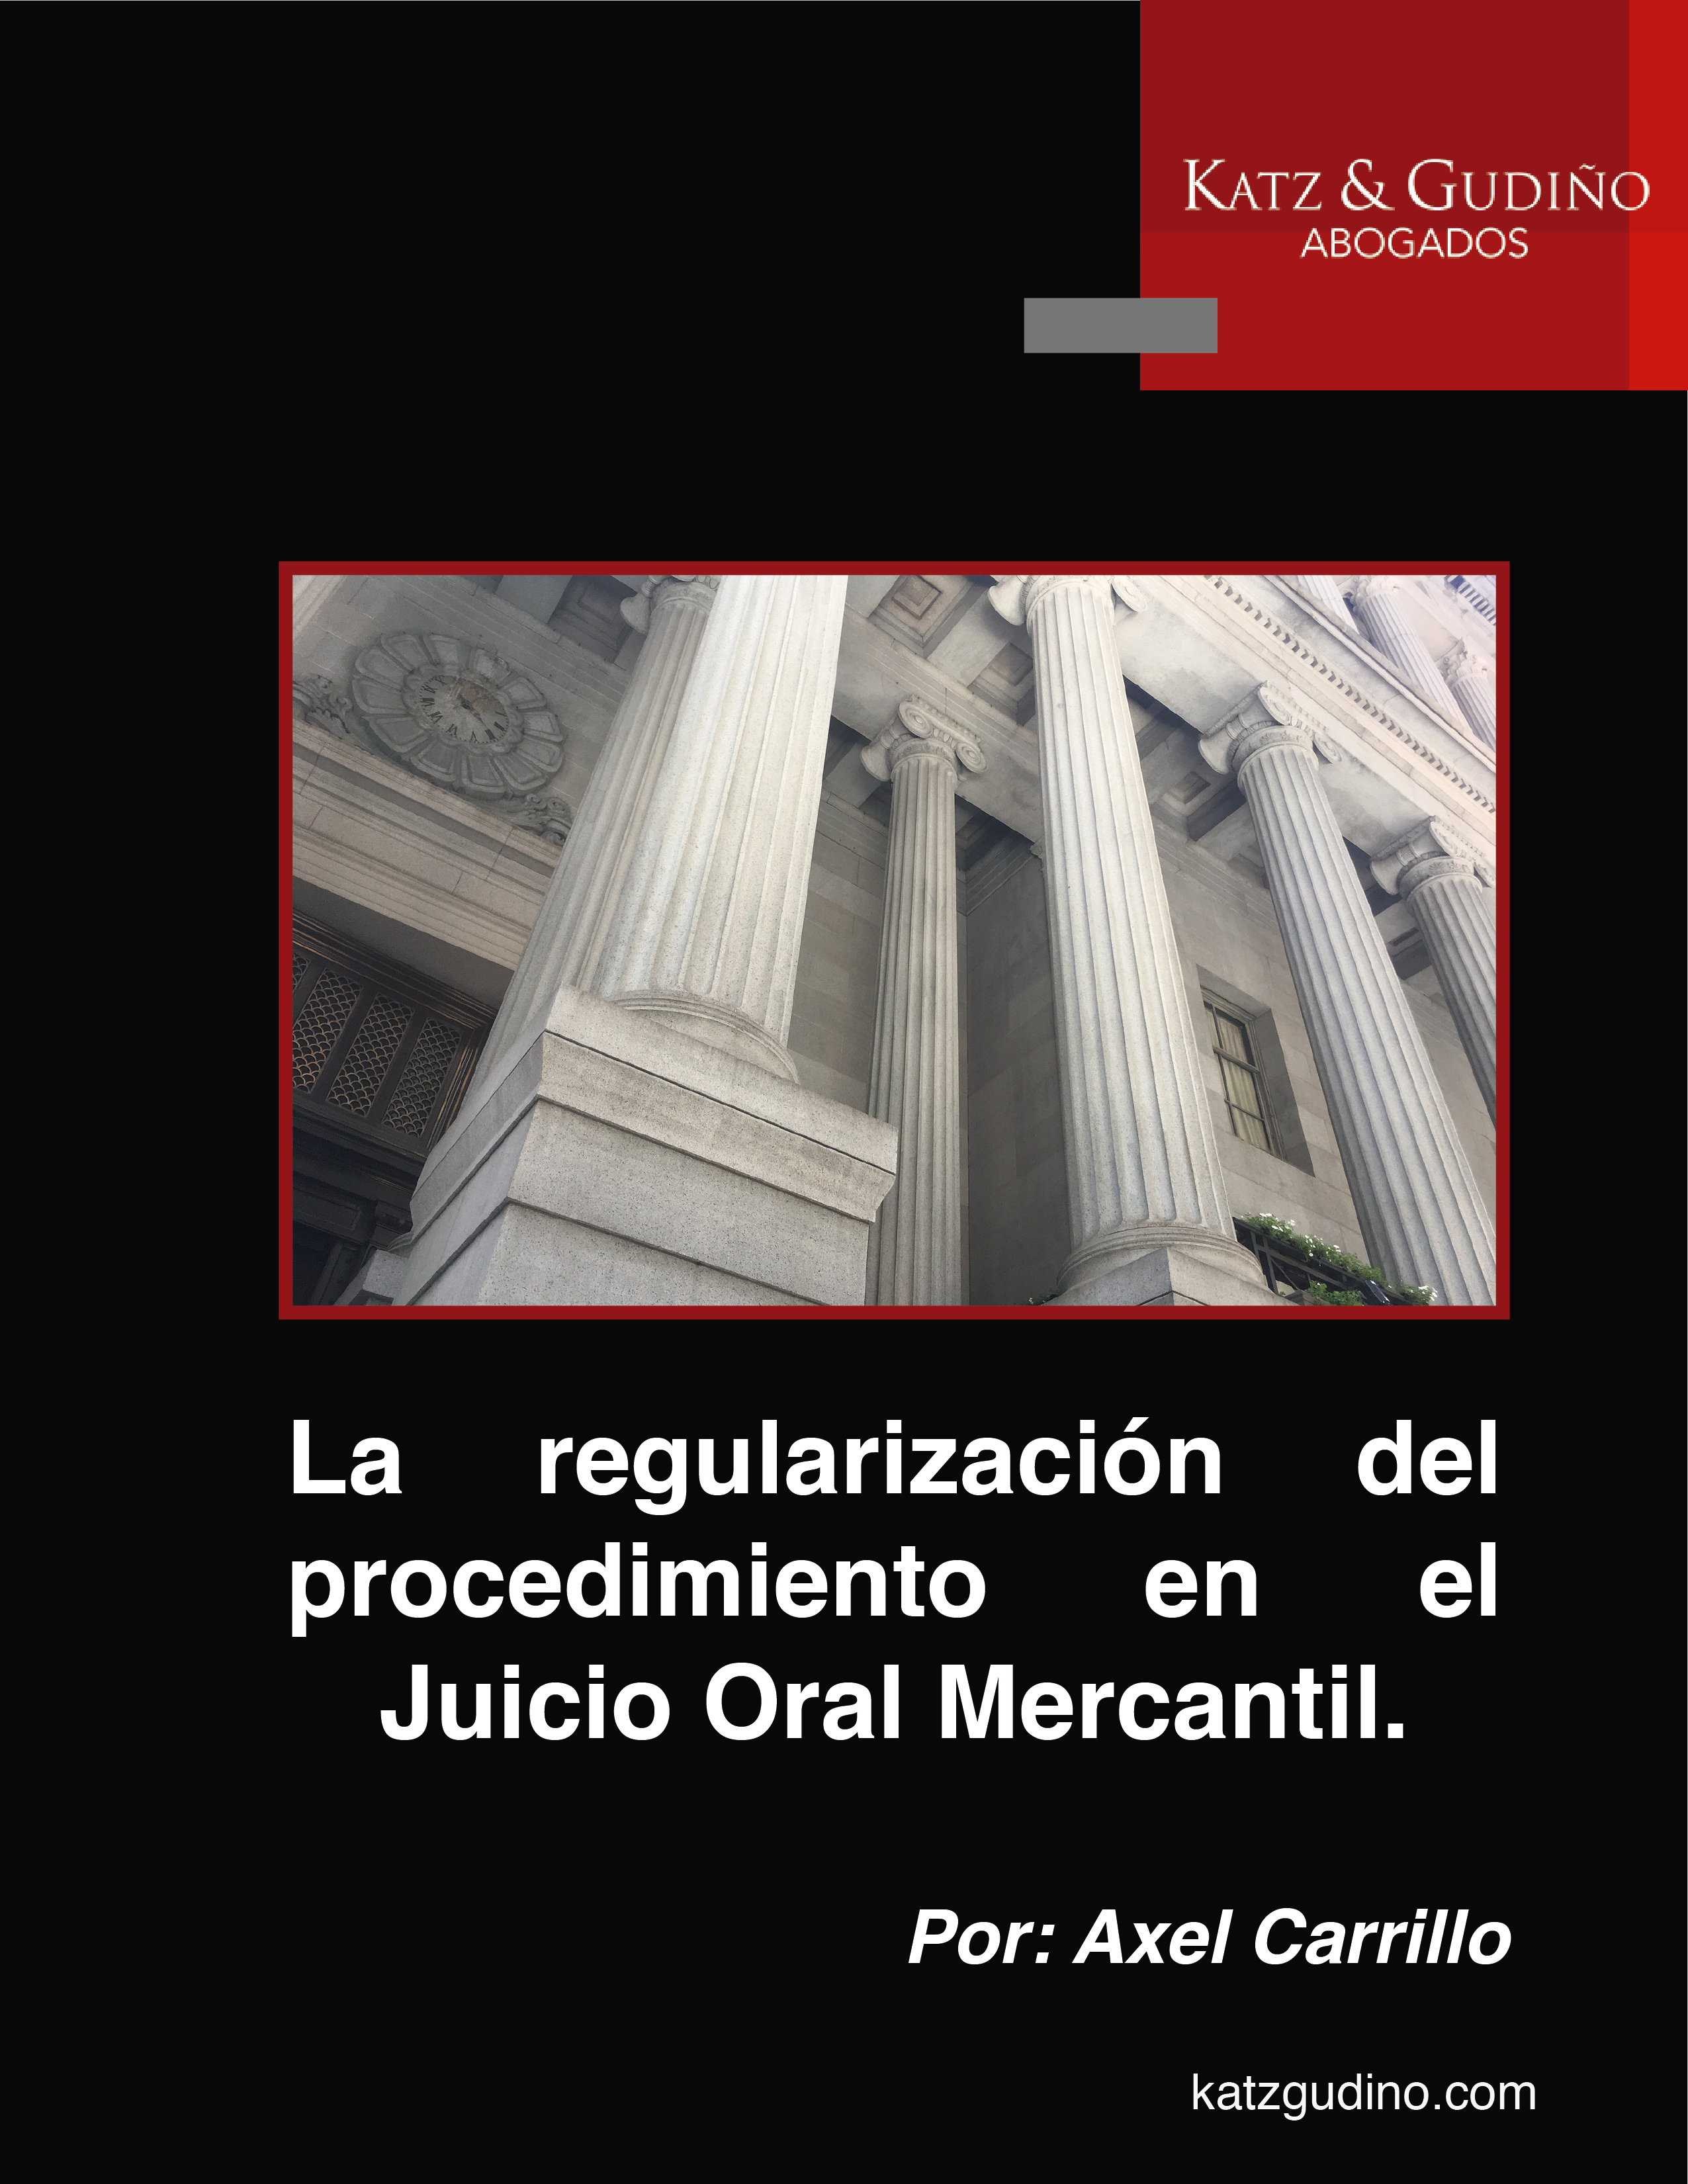 La regularización del procedimiento en el Juicio Oral Mercantil.